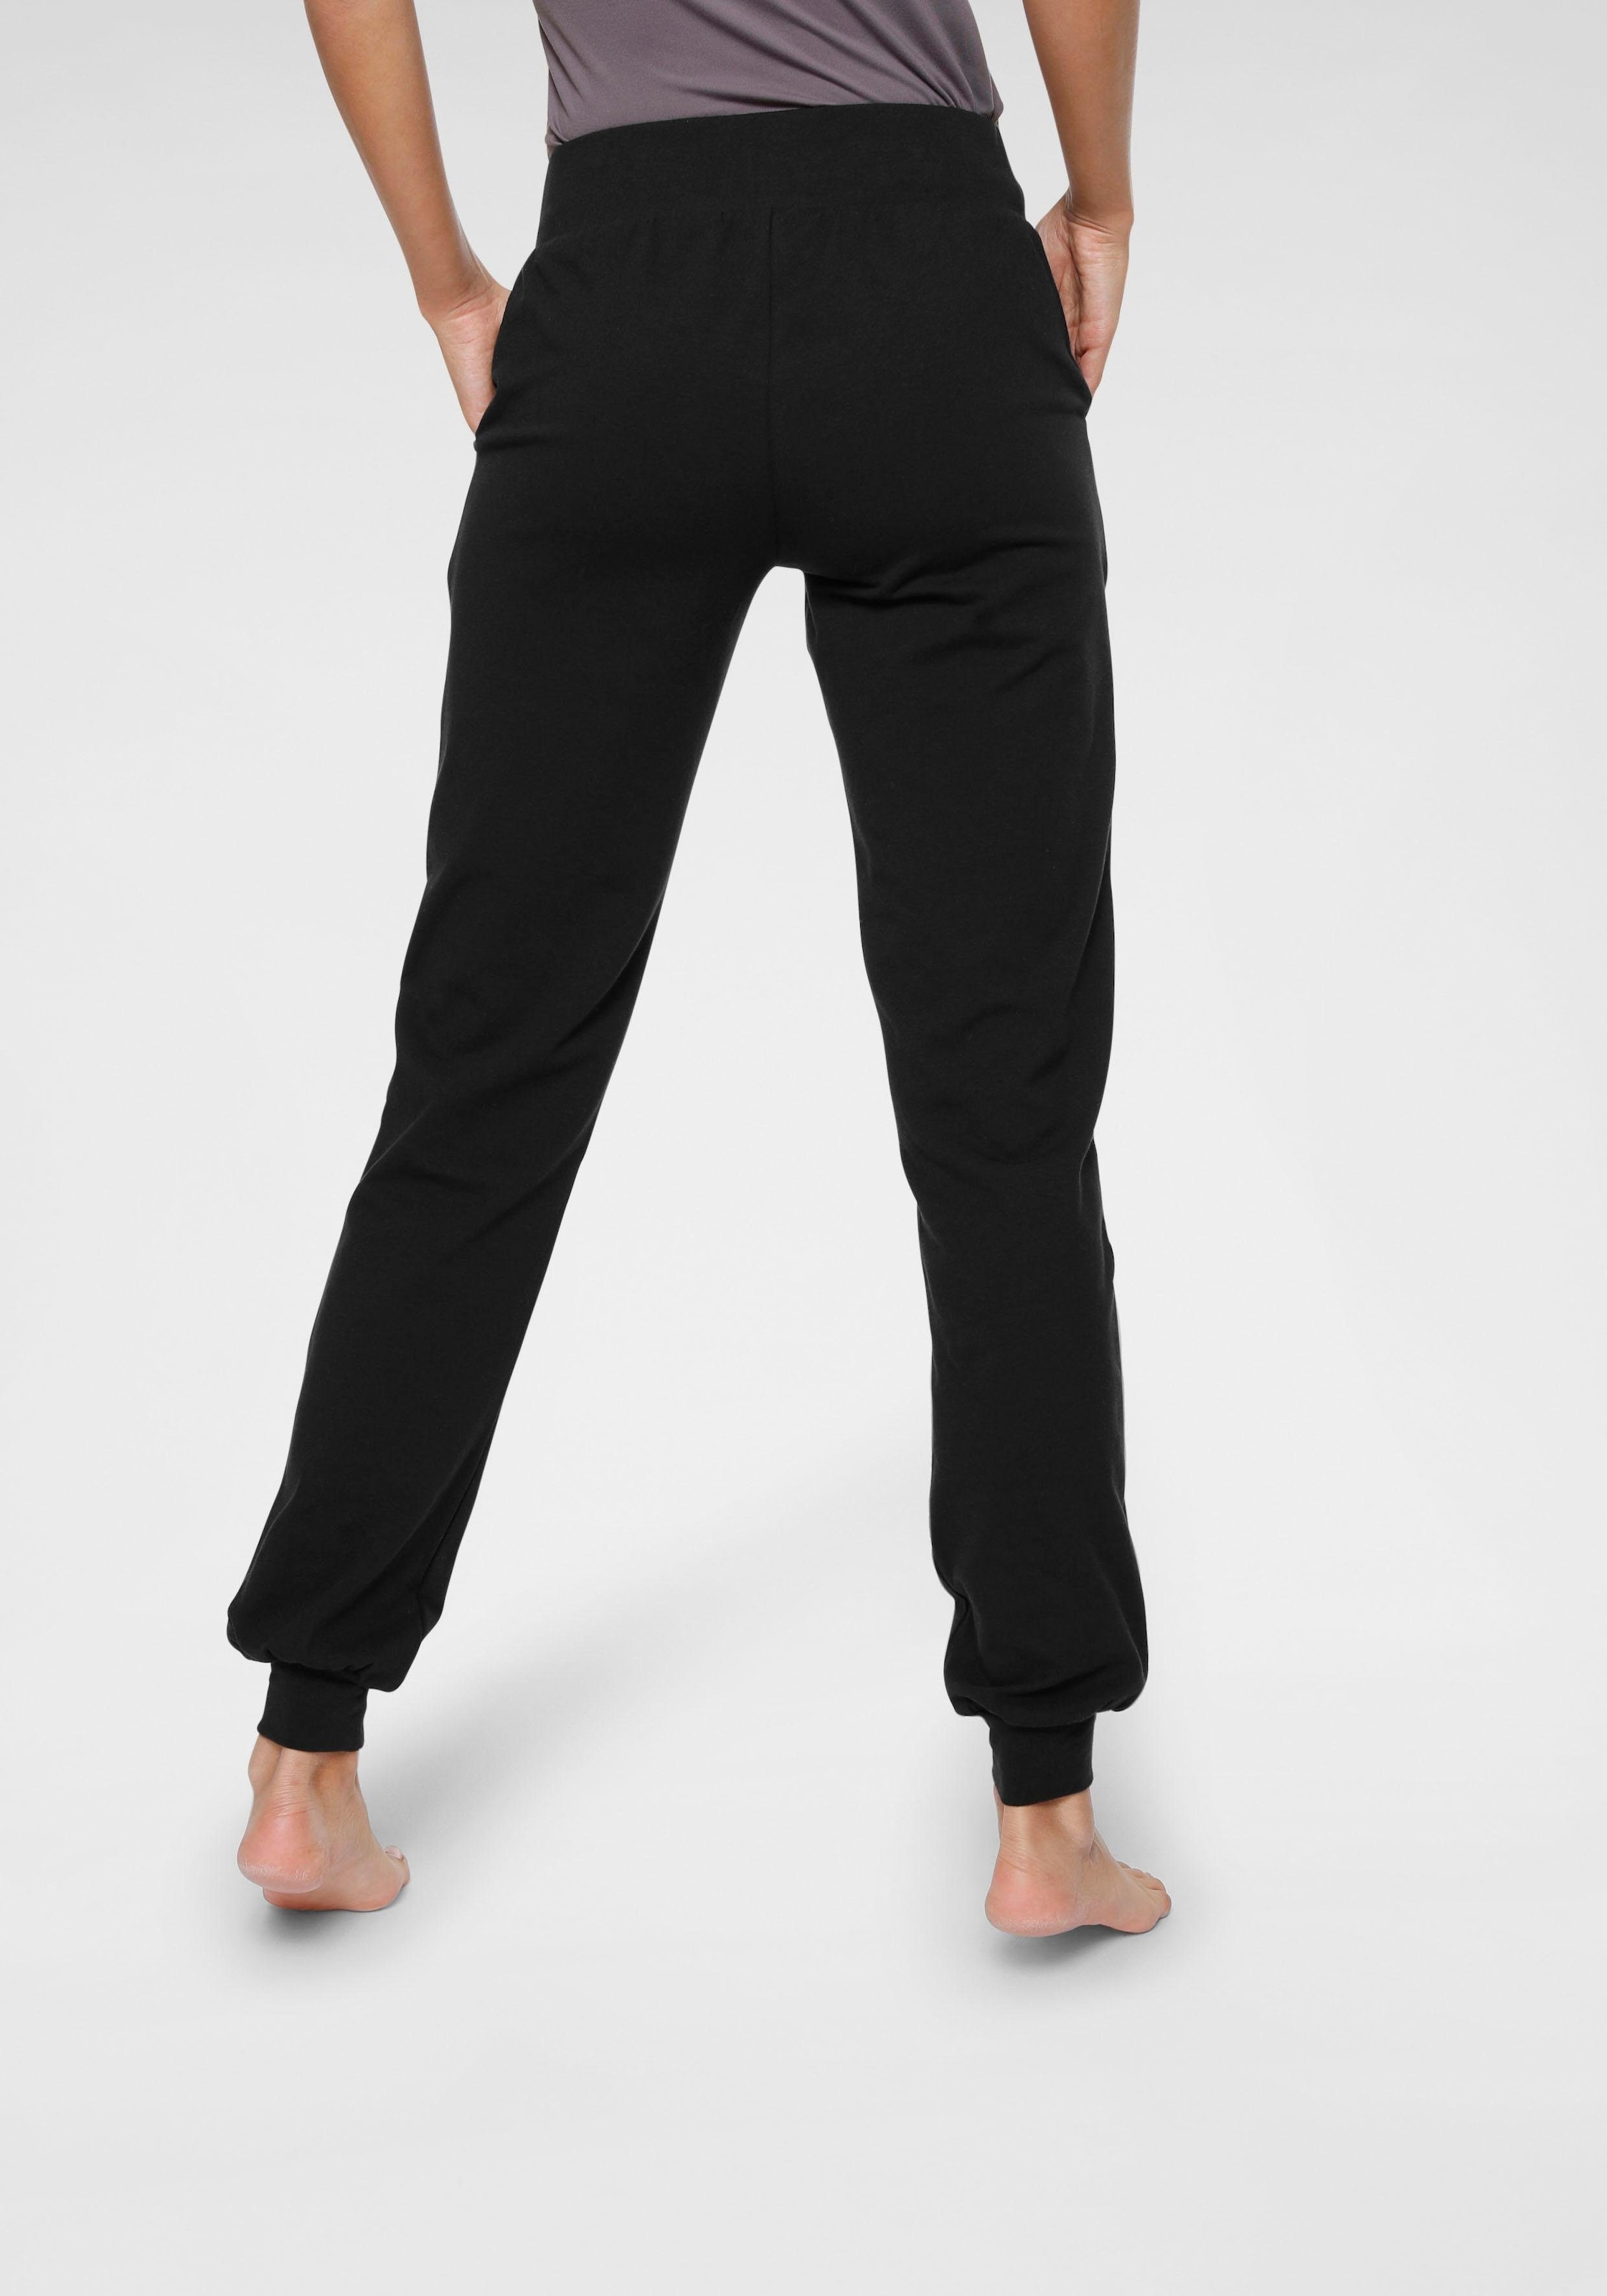 Loose Fit« Pants online Relax Sportswear - Ocean Yogahose - & Yoga »Soulwear